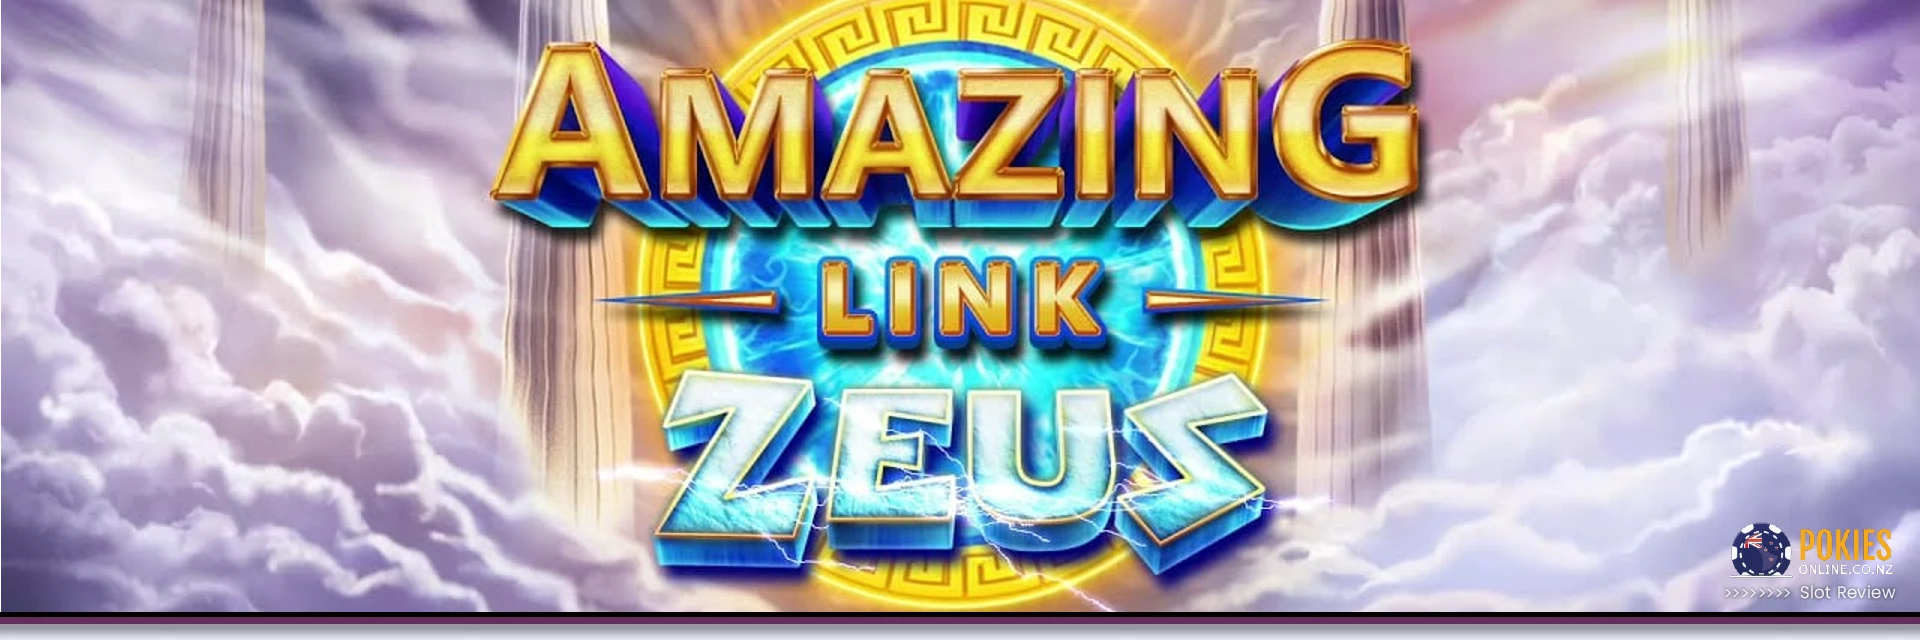 Amazing link zeus pokie